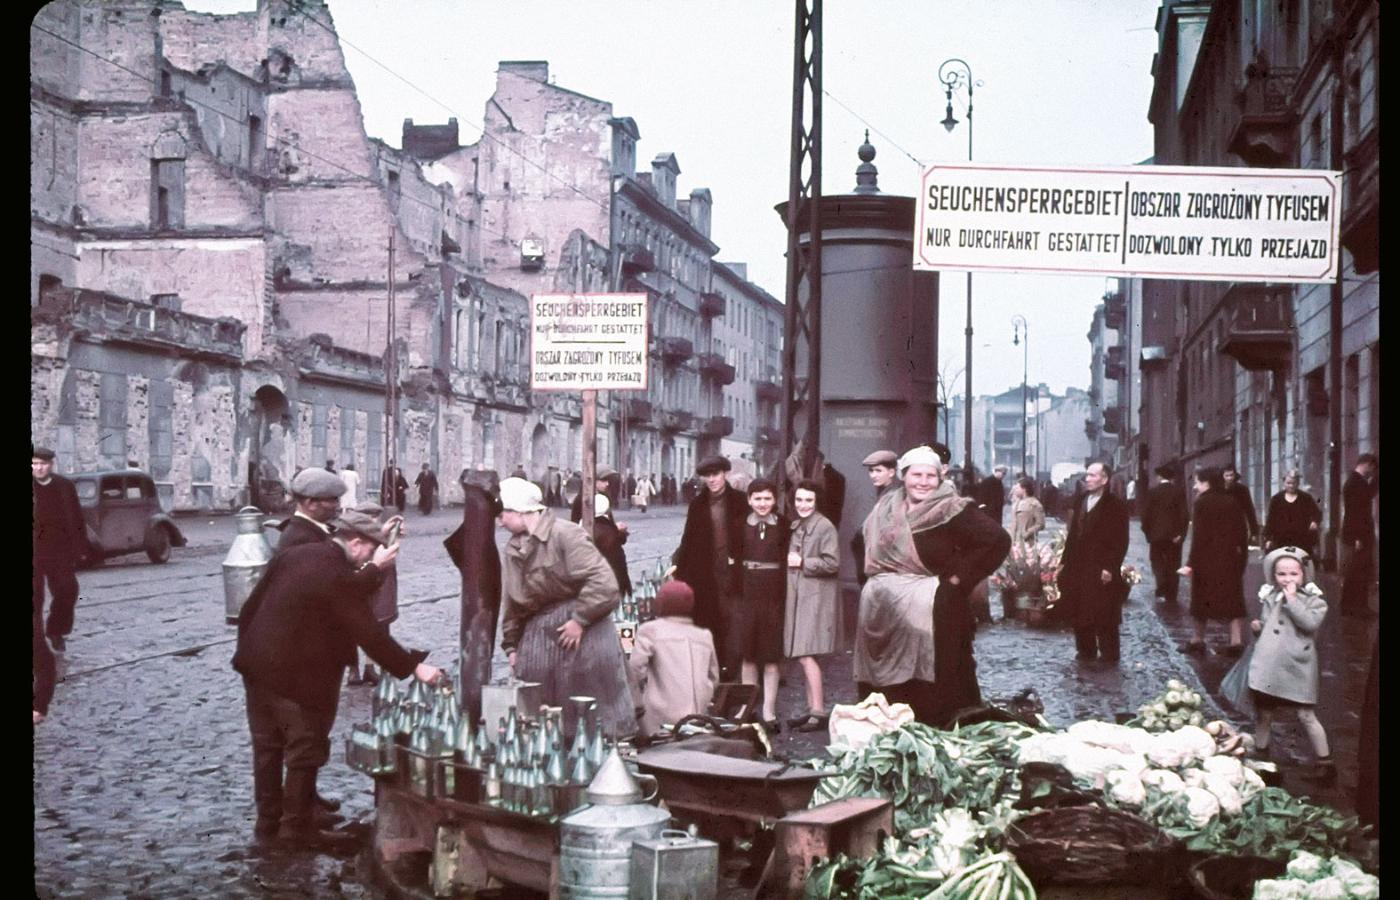 Warszawa, styczeń 1940 r., niemieckie ostrzeżenie „Obszar zagrożony tyfusem” na terenie dzielnicy żydowskiej.